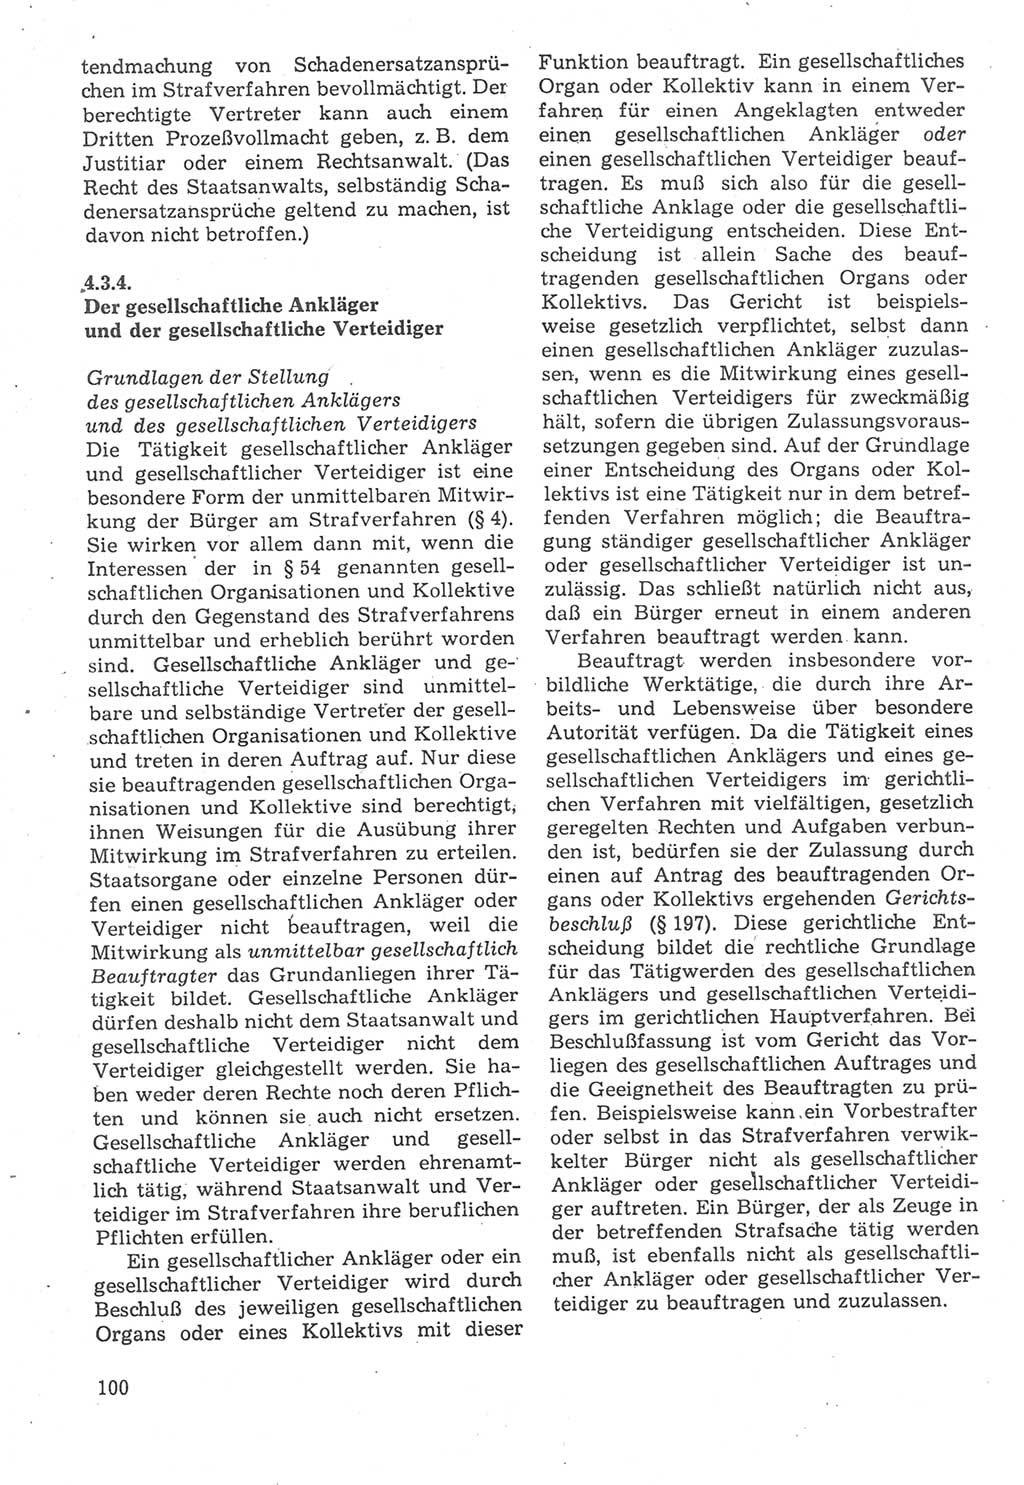 Strafverfahrensrecht [Deutsche Demokratische Republik (DDR)], Lehrbuch 1987, Seite 100 (Strafverf.-R. DDR Lb. 1987, S. 100)